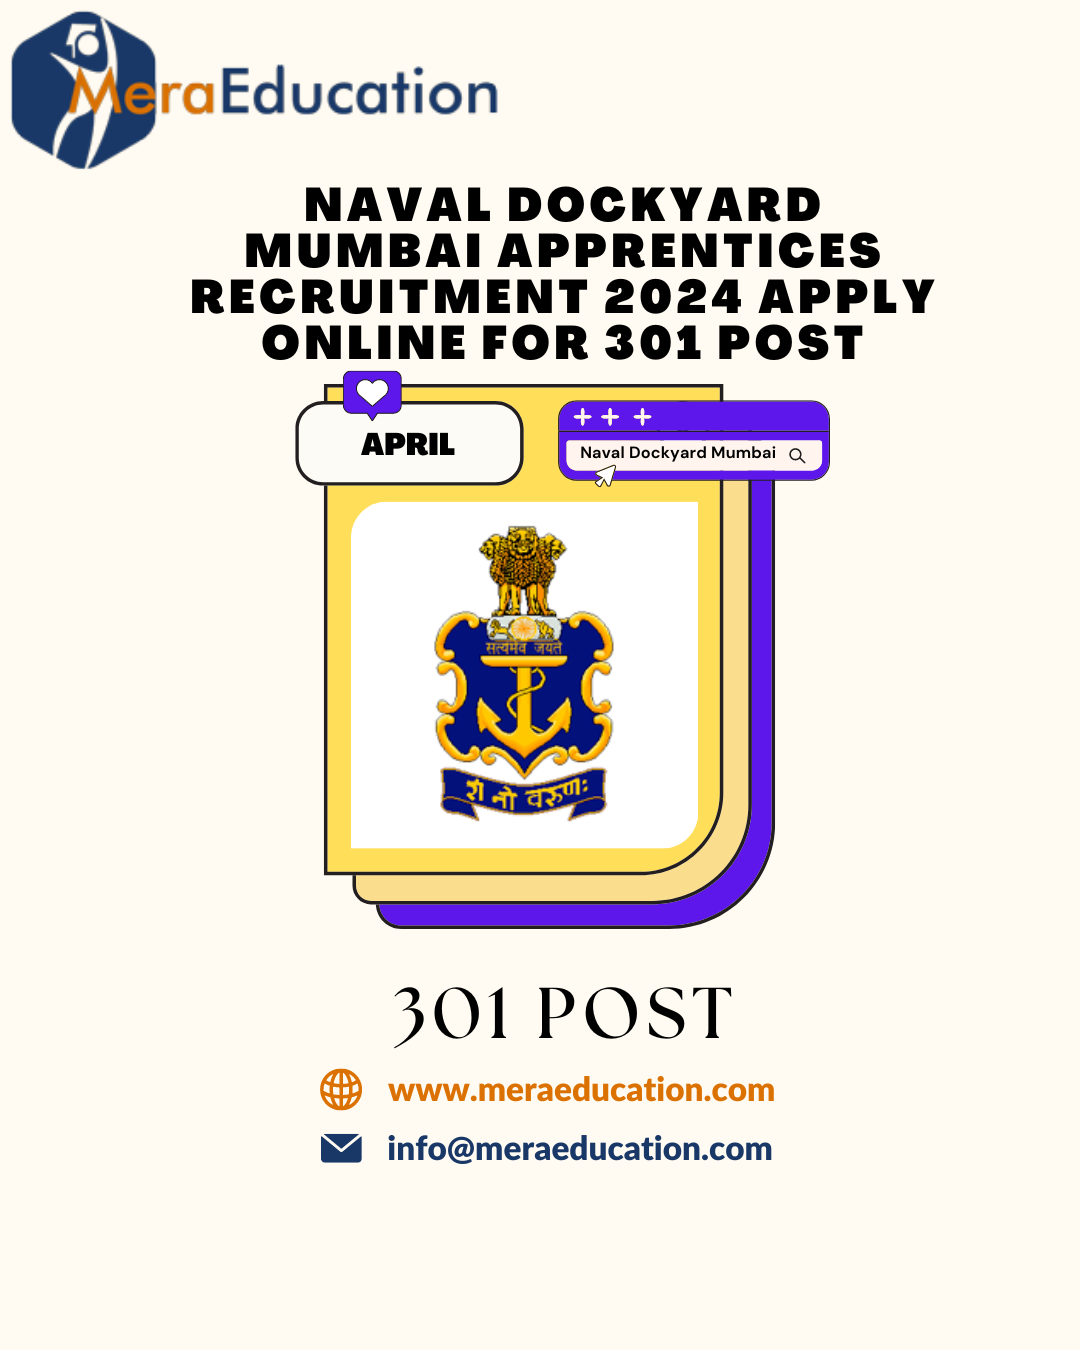 Naval Dockyard Mumbai Meraeducation